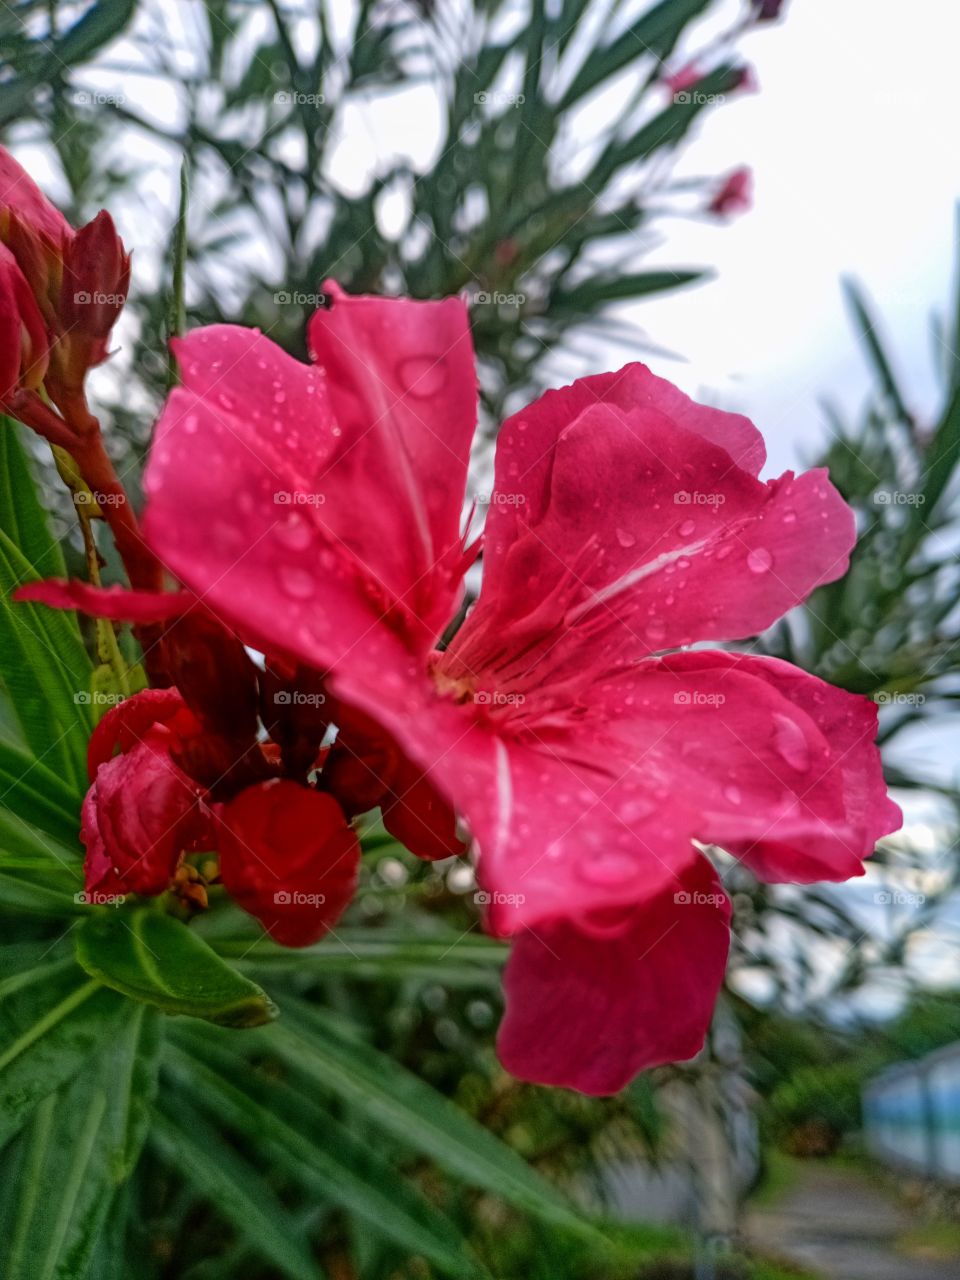 Blooming flower in rainy season.